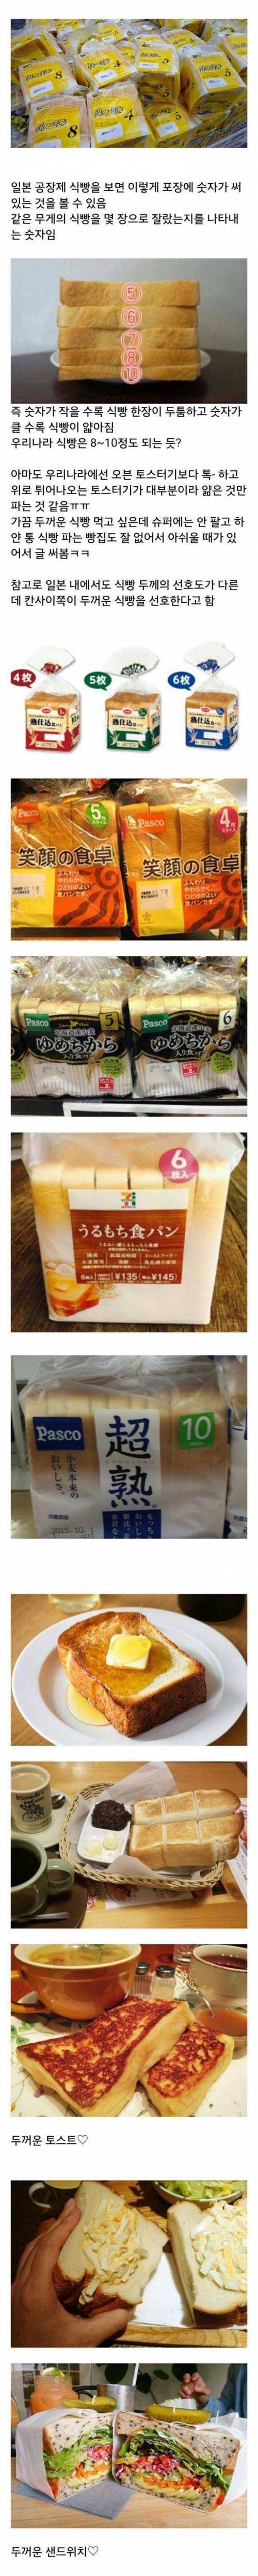 일본의 식빵판매방법.jpg